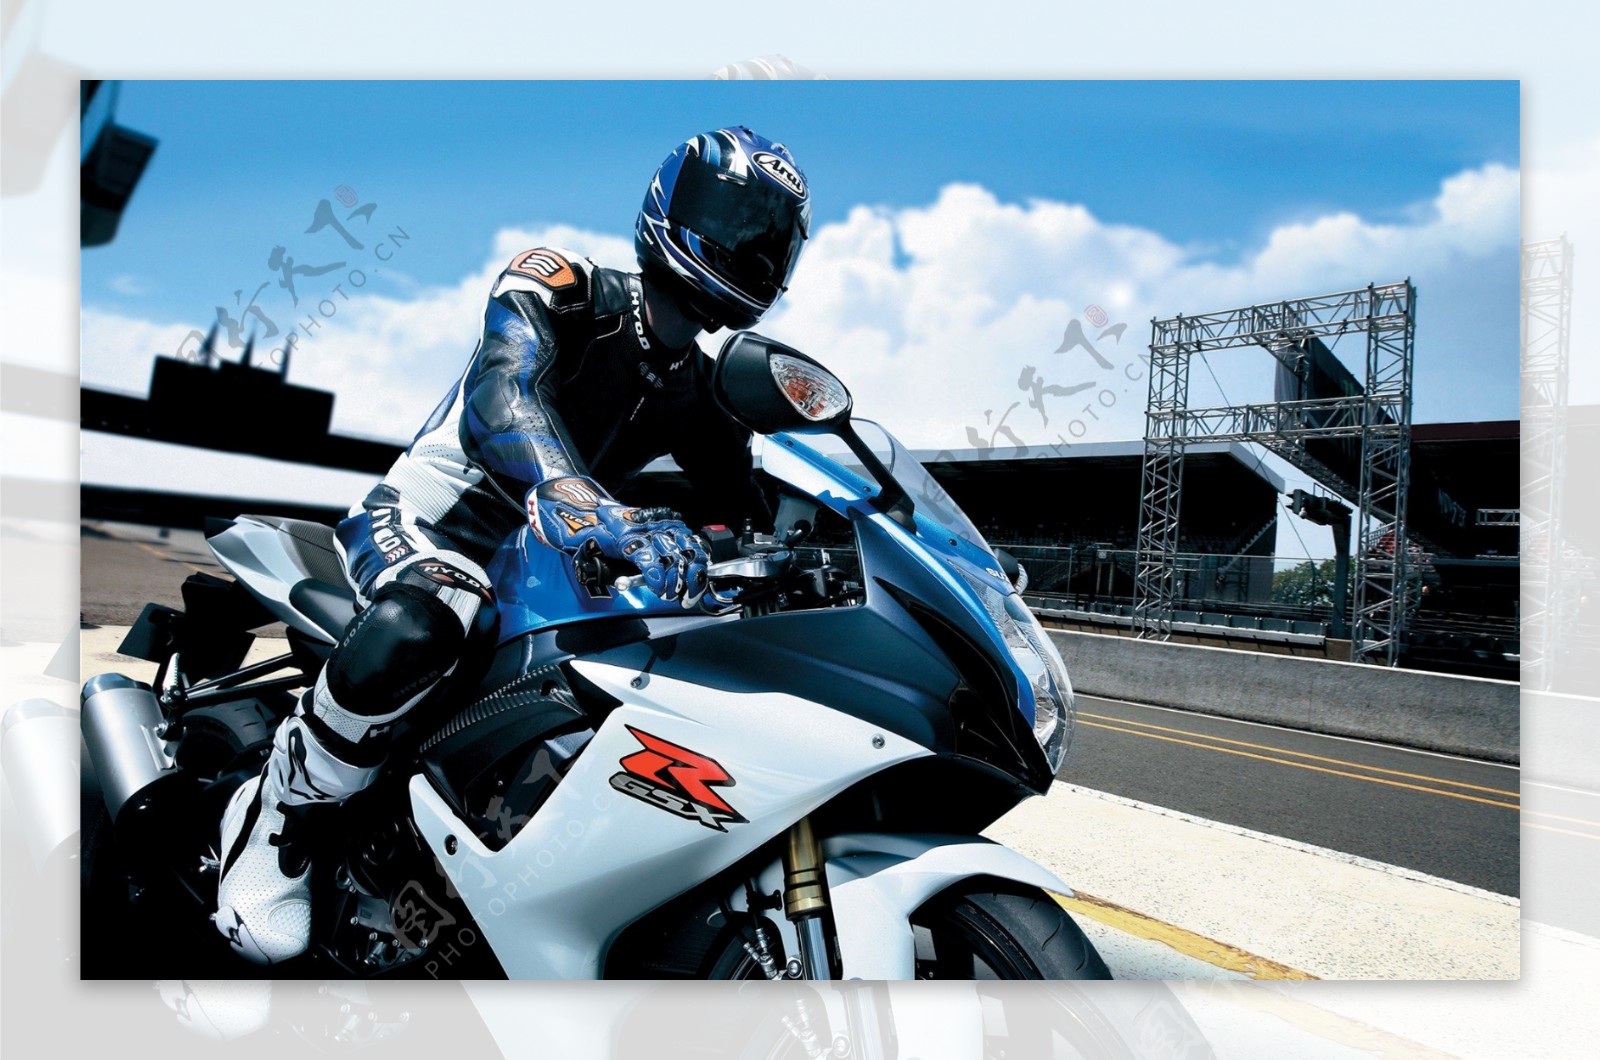 suzuki铃木摩托车gsxr6002011图片